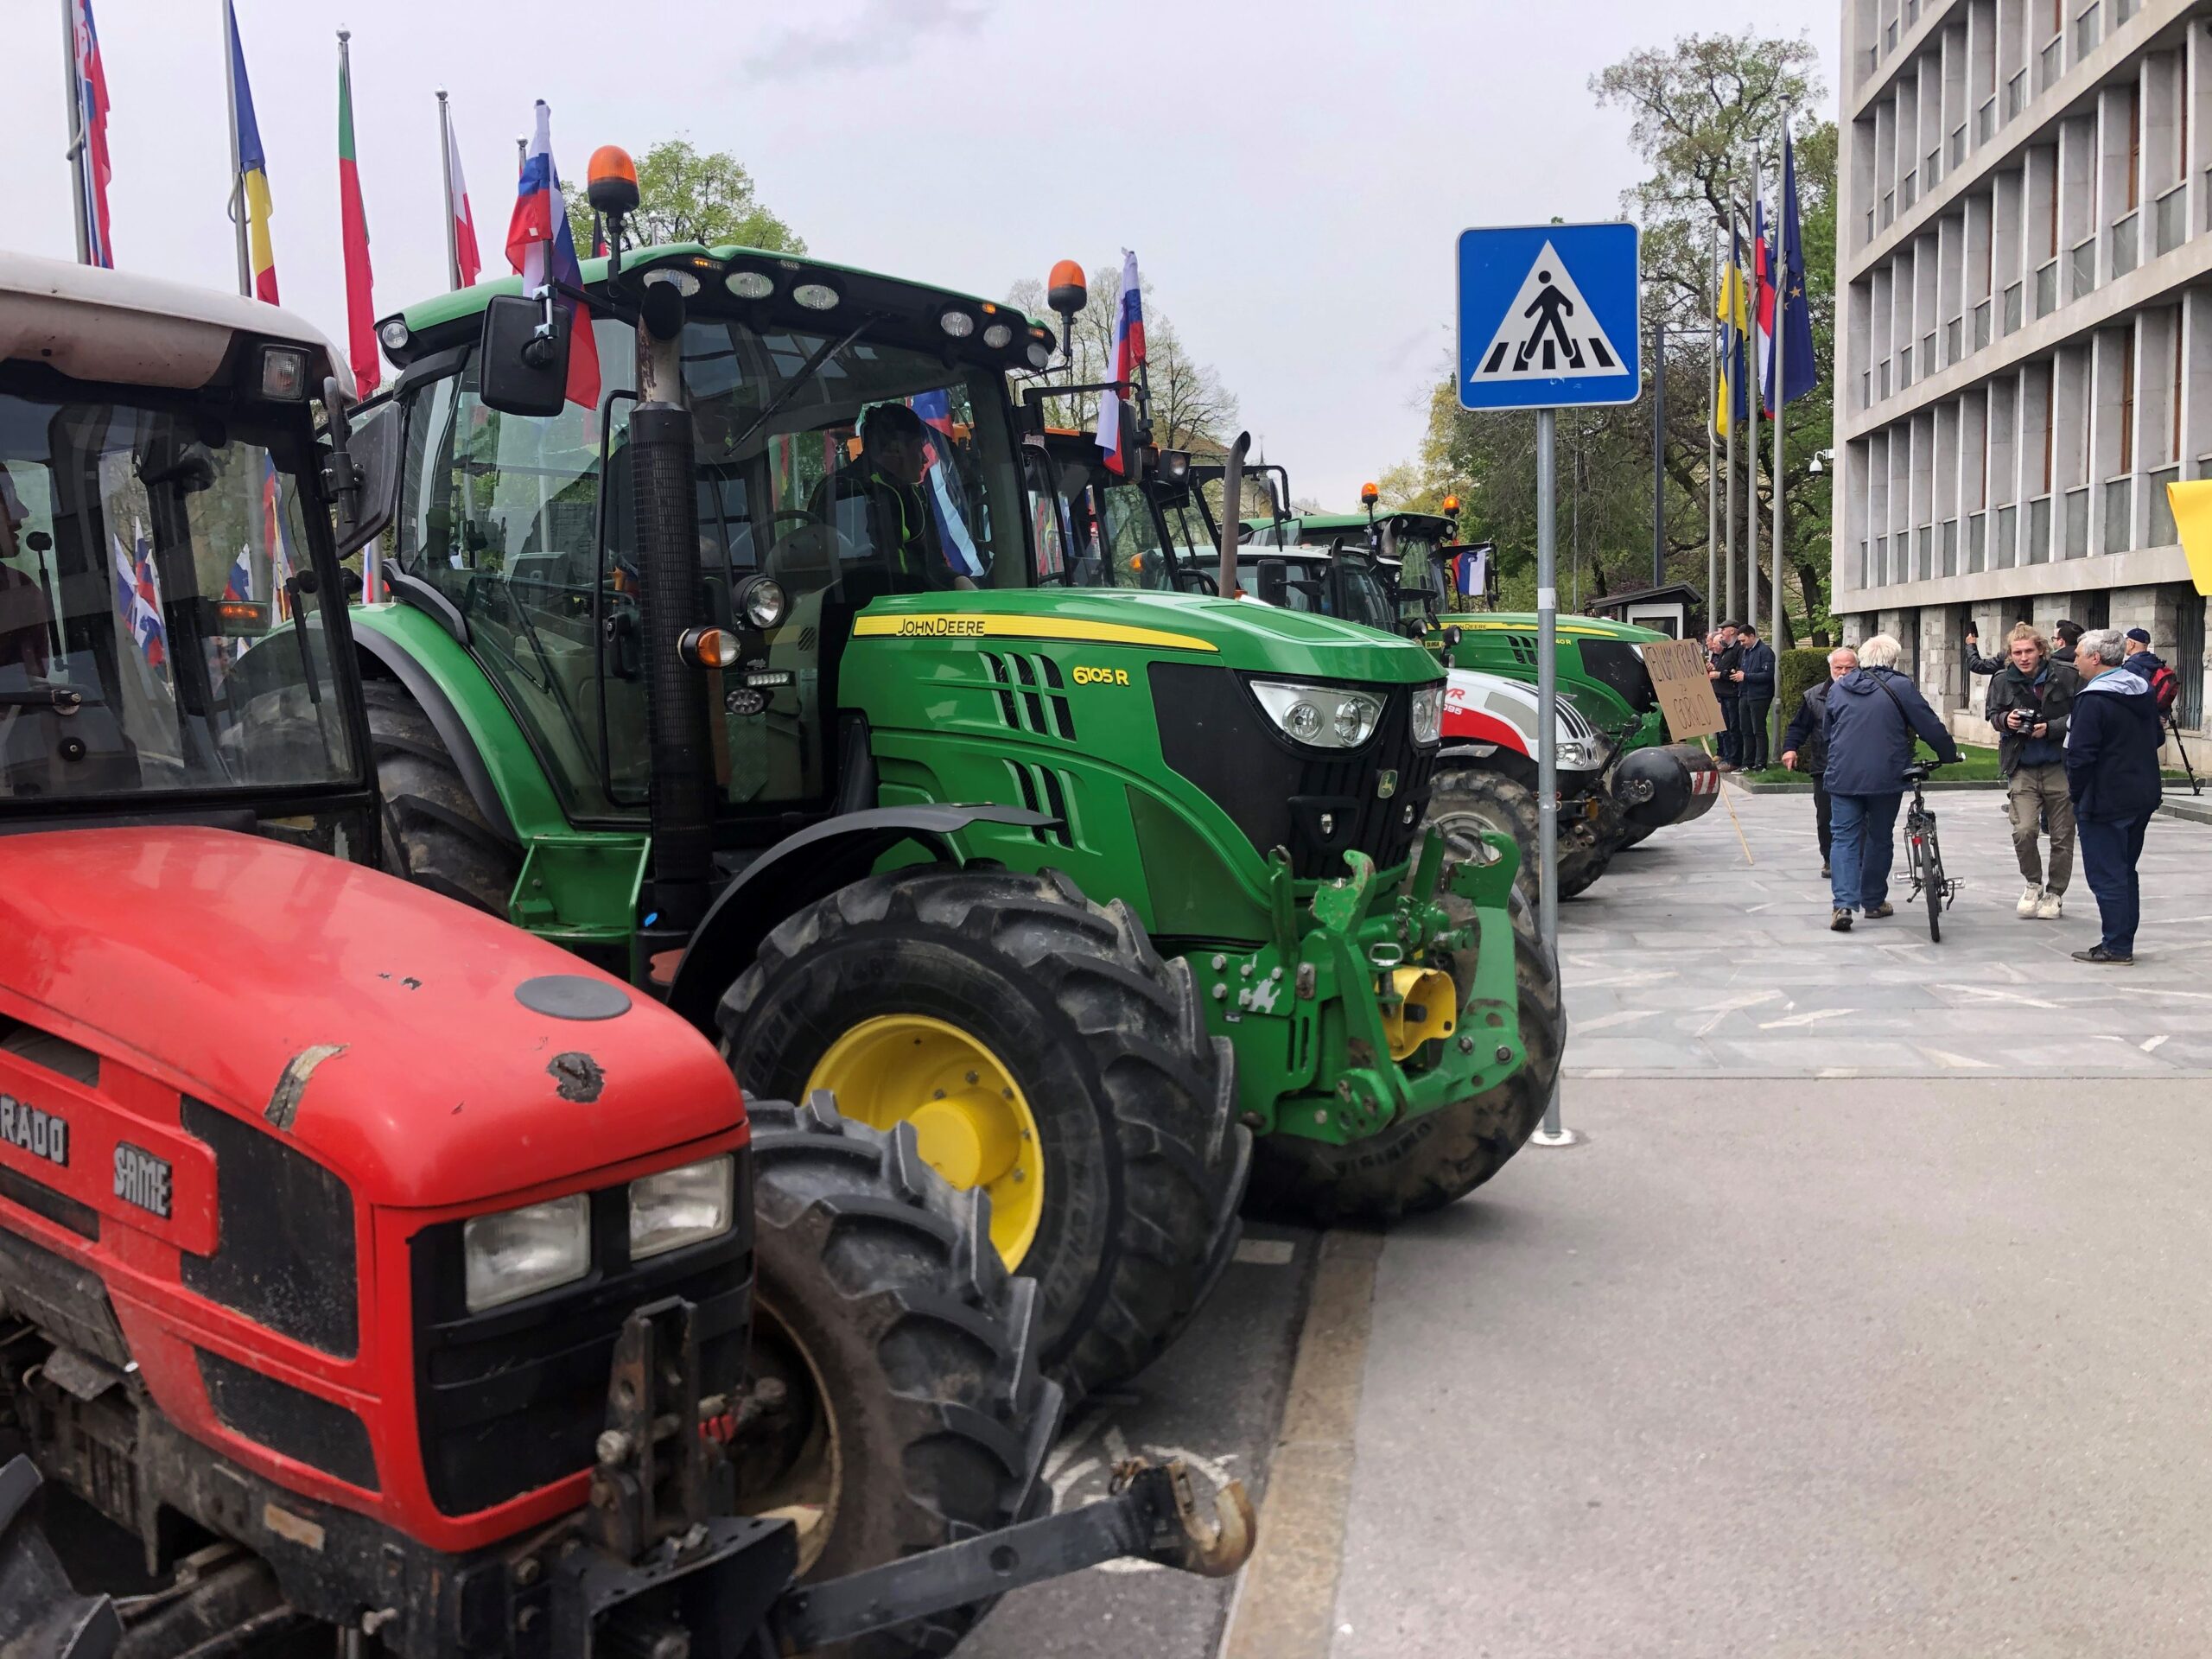 “Če mislite, da bomo kot mestna občina dajali kazen za 500 traktorjev, se motite. Ne bomo” – Zoran Janković o tem, da odlok ne bo veljal za protestne kmete s traktorji